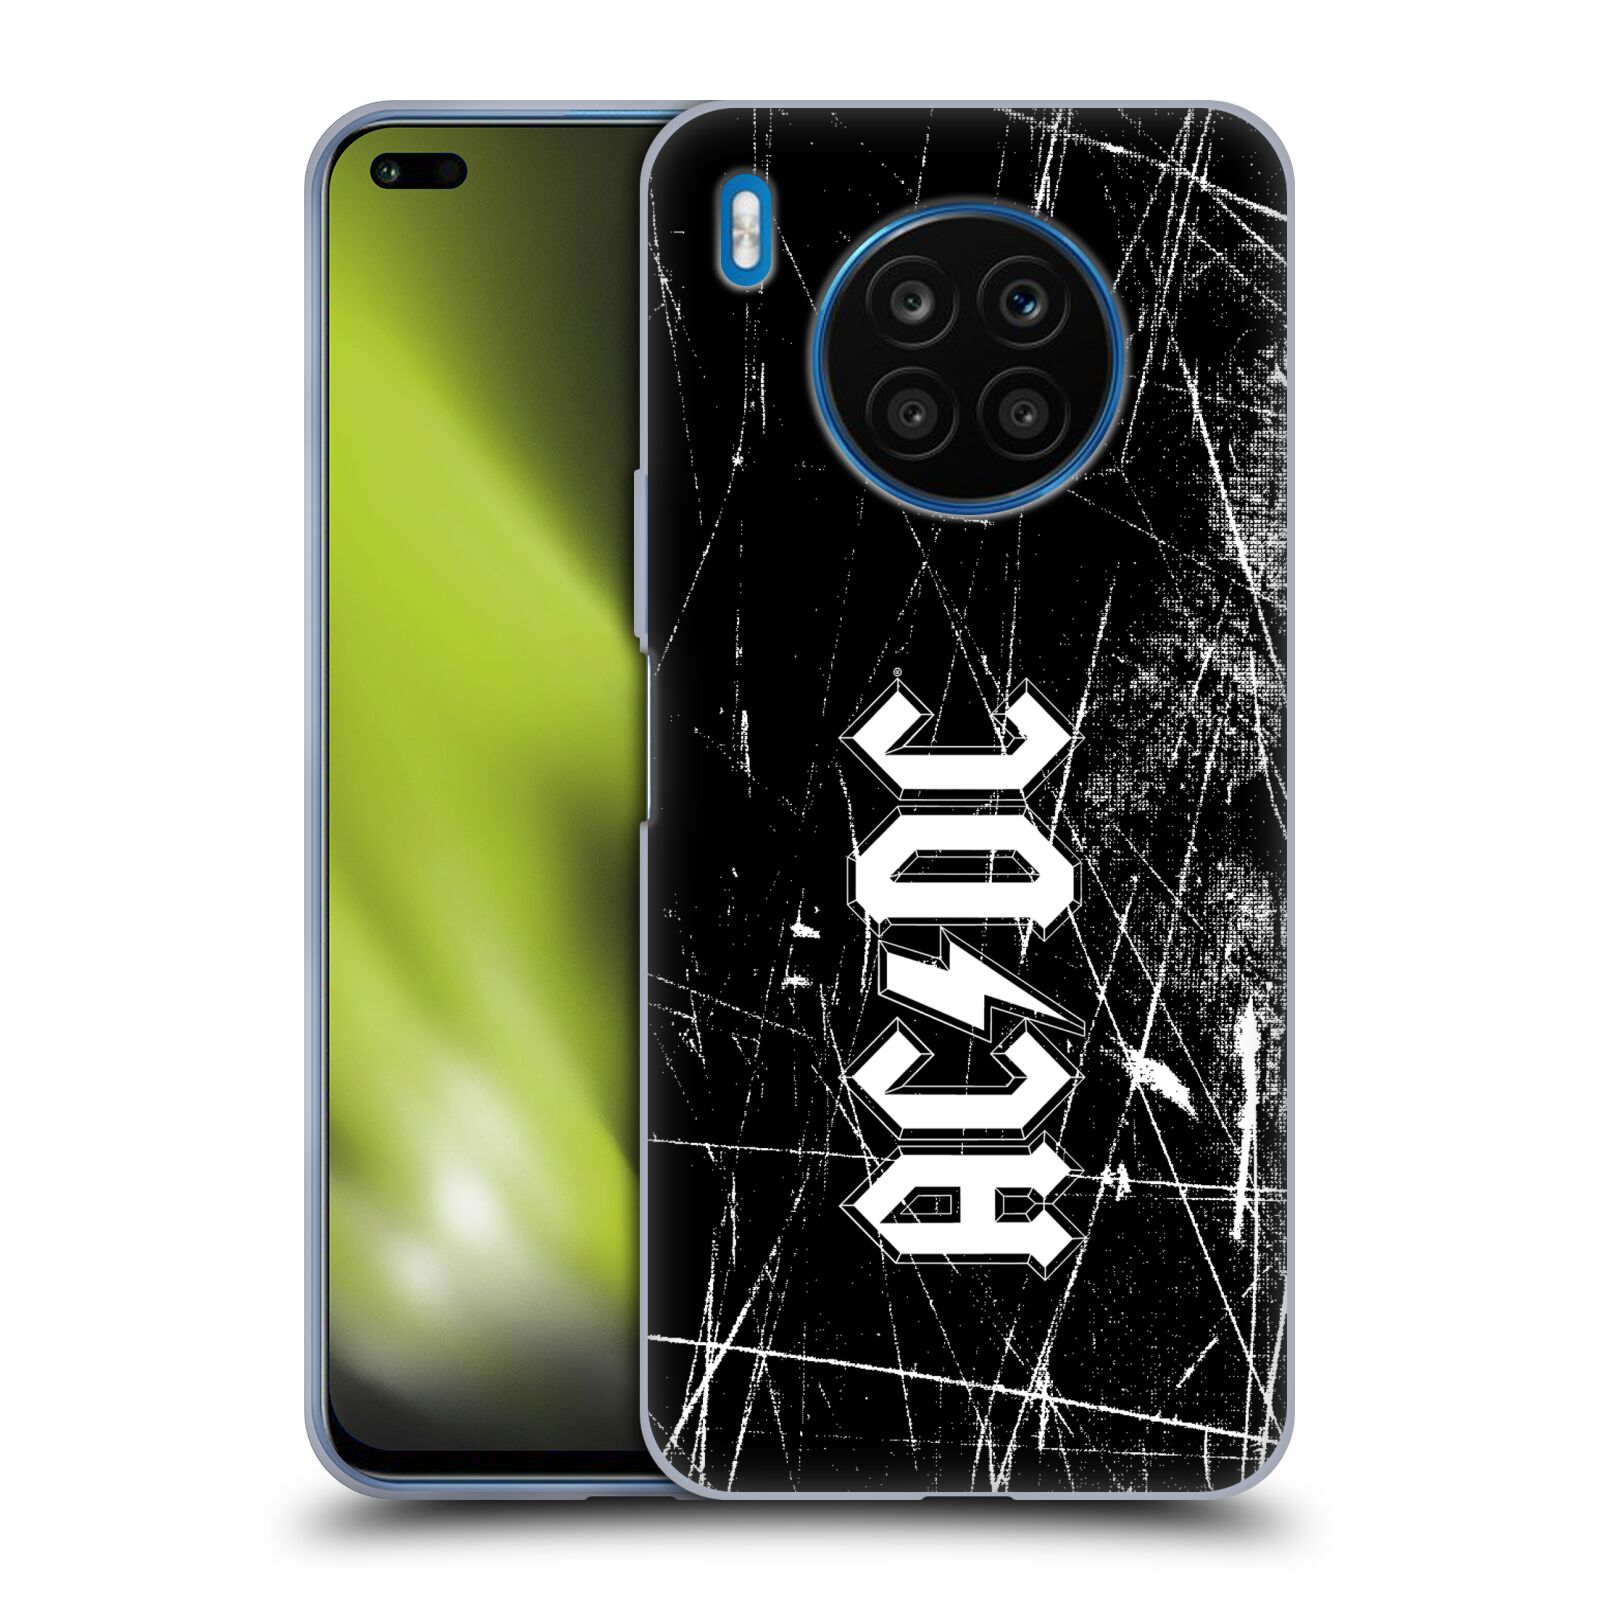 Silikonové pouzdro na mobil Huawei Nova 8i / Honor 50 Lite - Head Case - AC/DC Černobílé logo